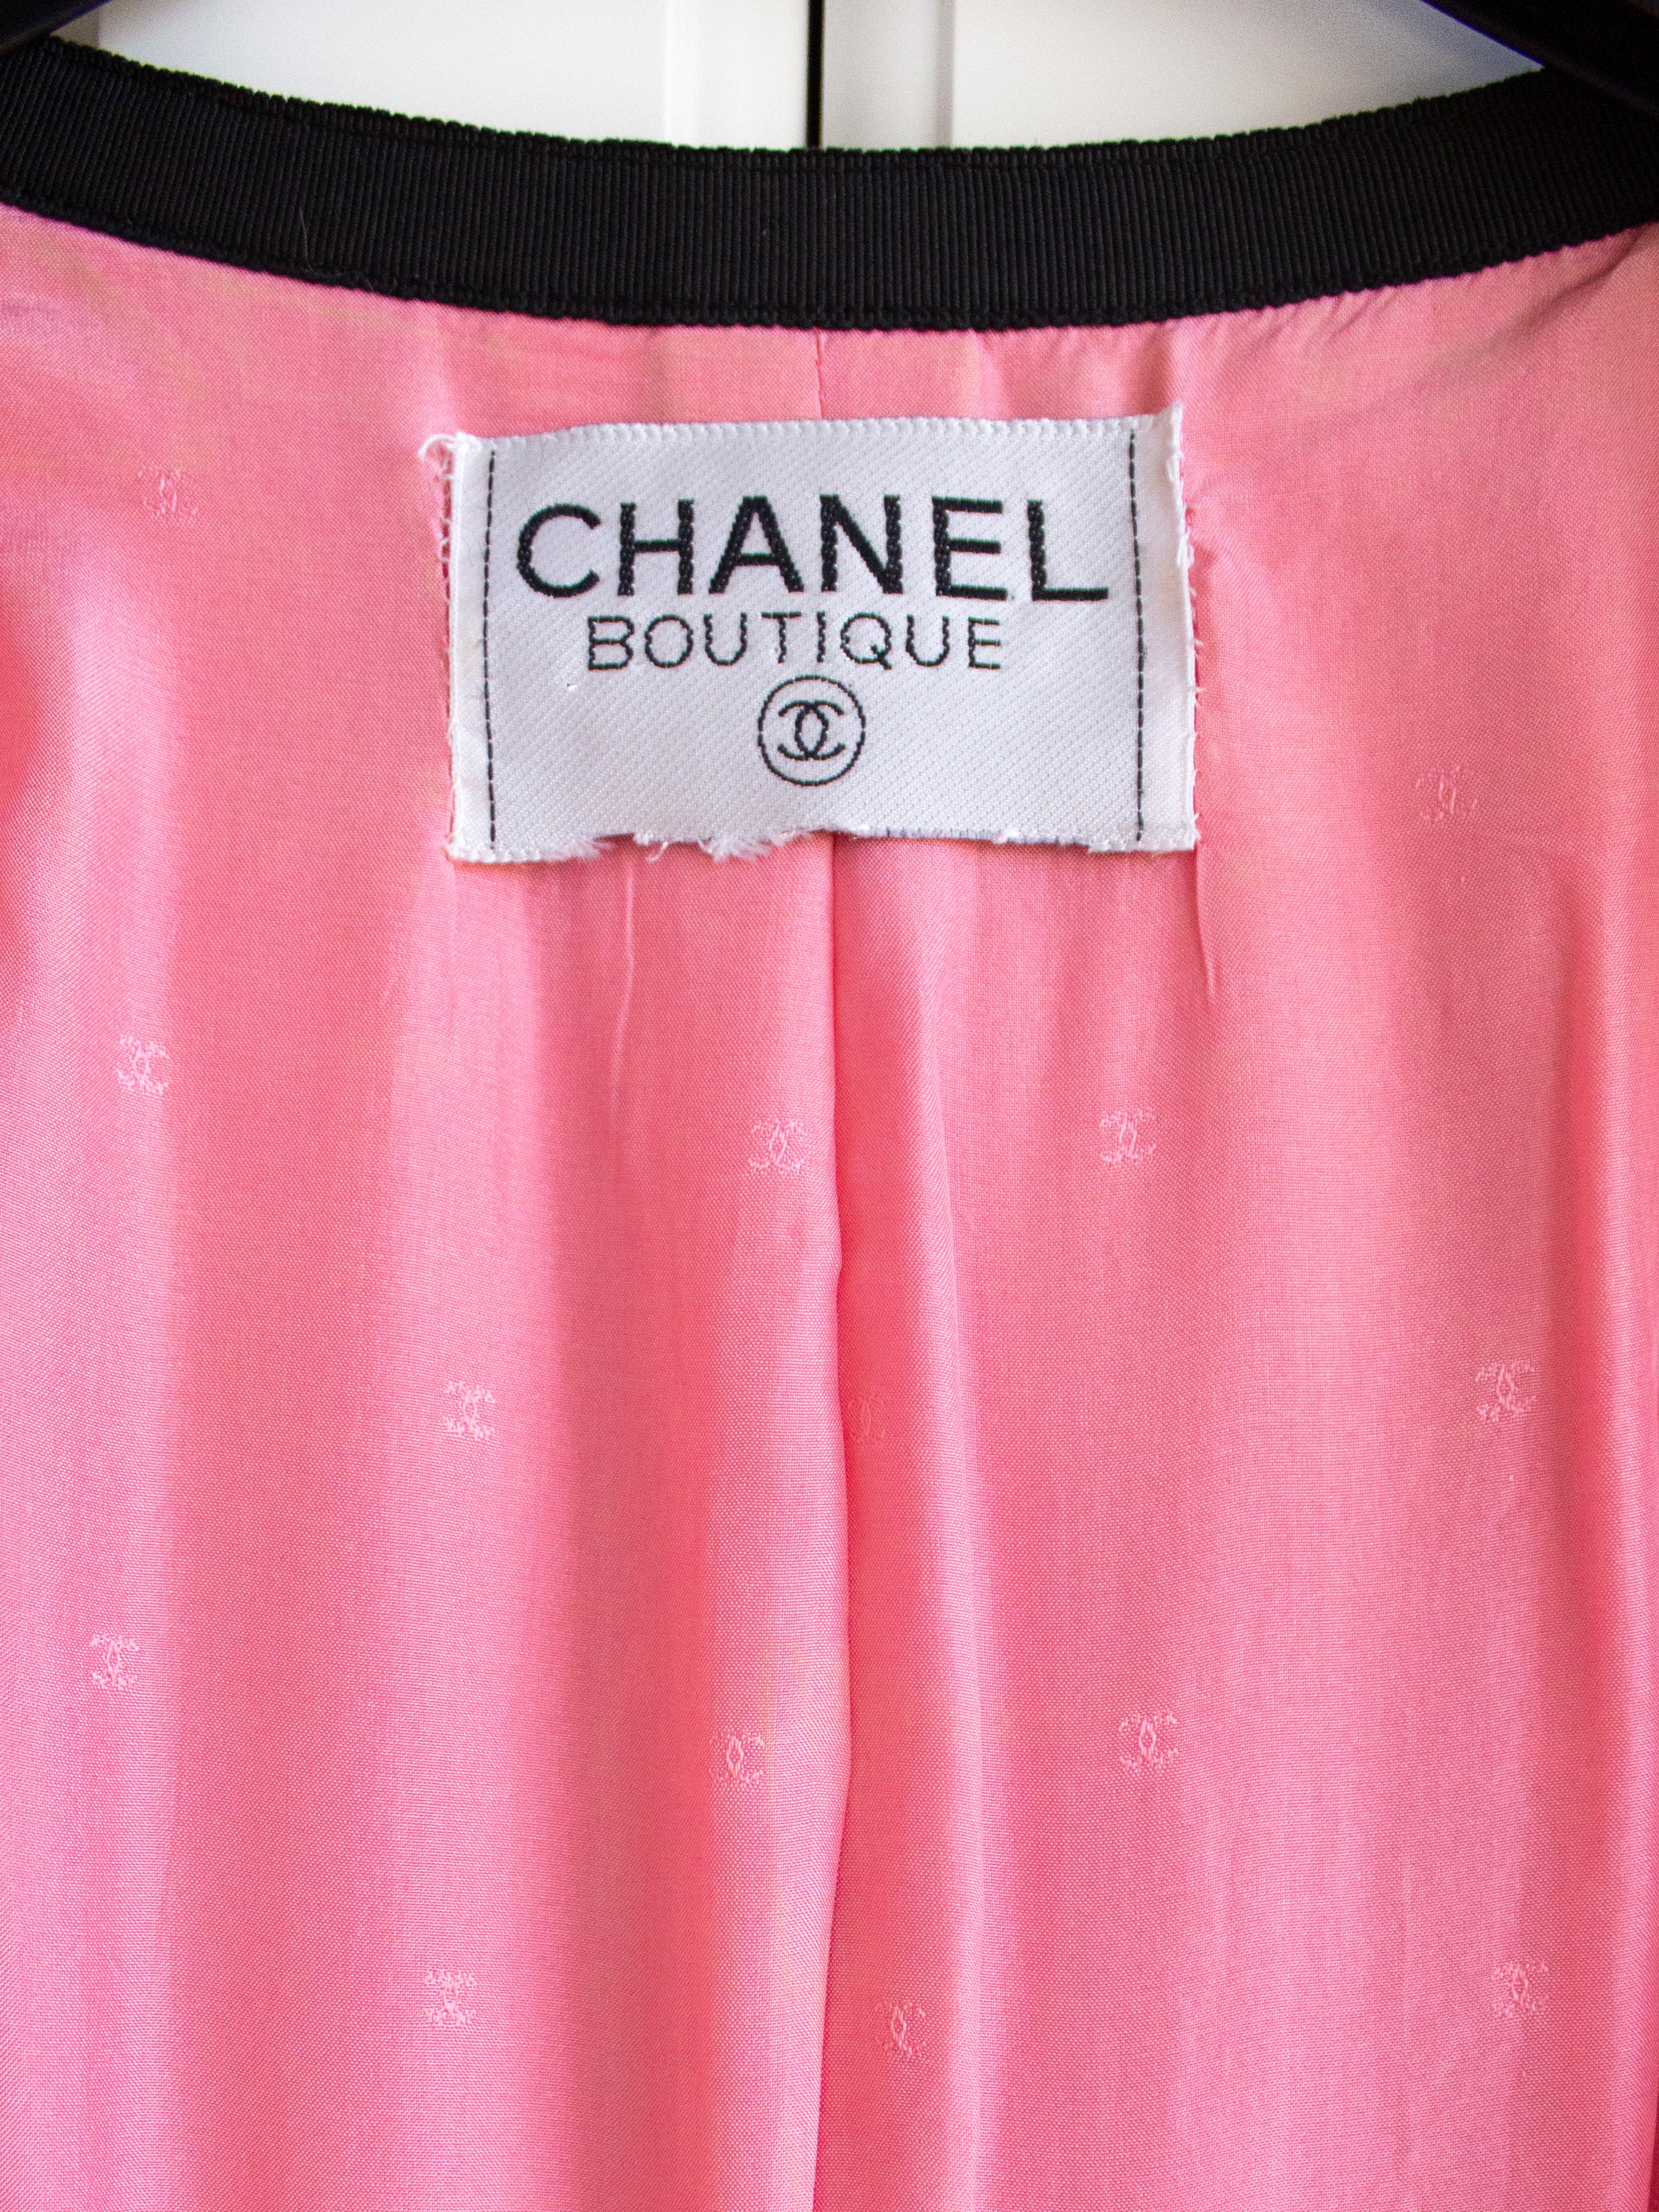 Chanel Vintage Spring 1991 Linda Pink Black Bow Jacket Skirt Suit 4